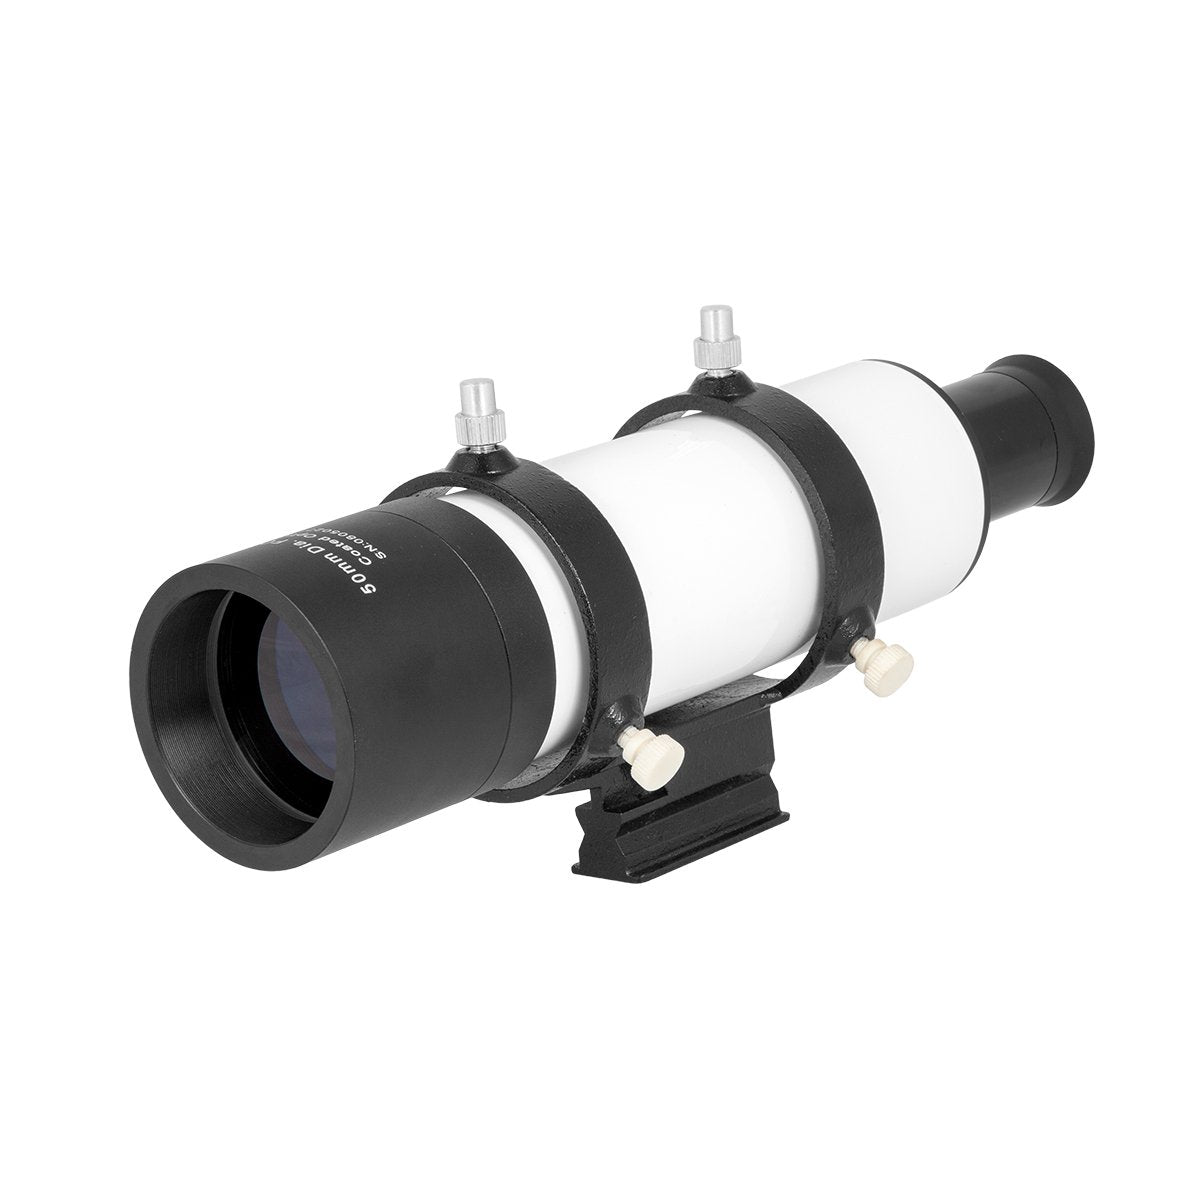 Explore Scientific 8x50mm Non-Illuminated Finder Scope- VF0850S - CoreScientifics- Hobby Optics